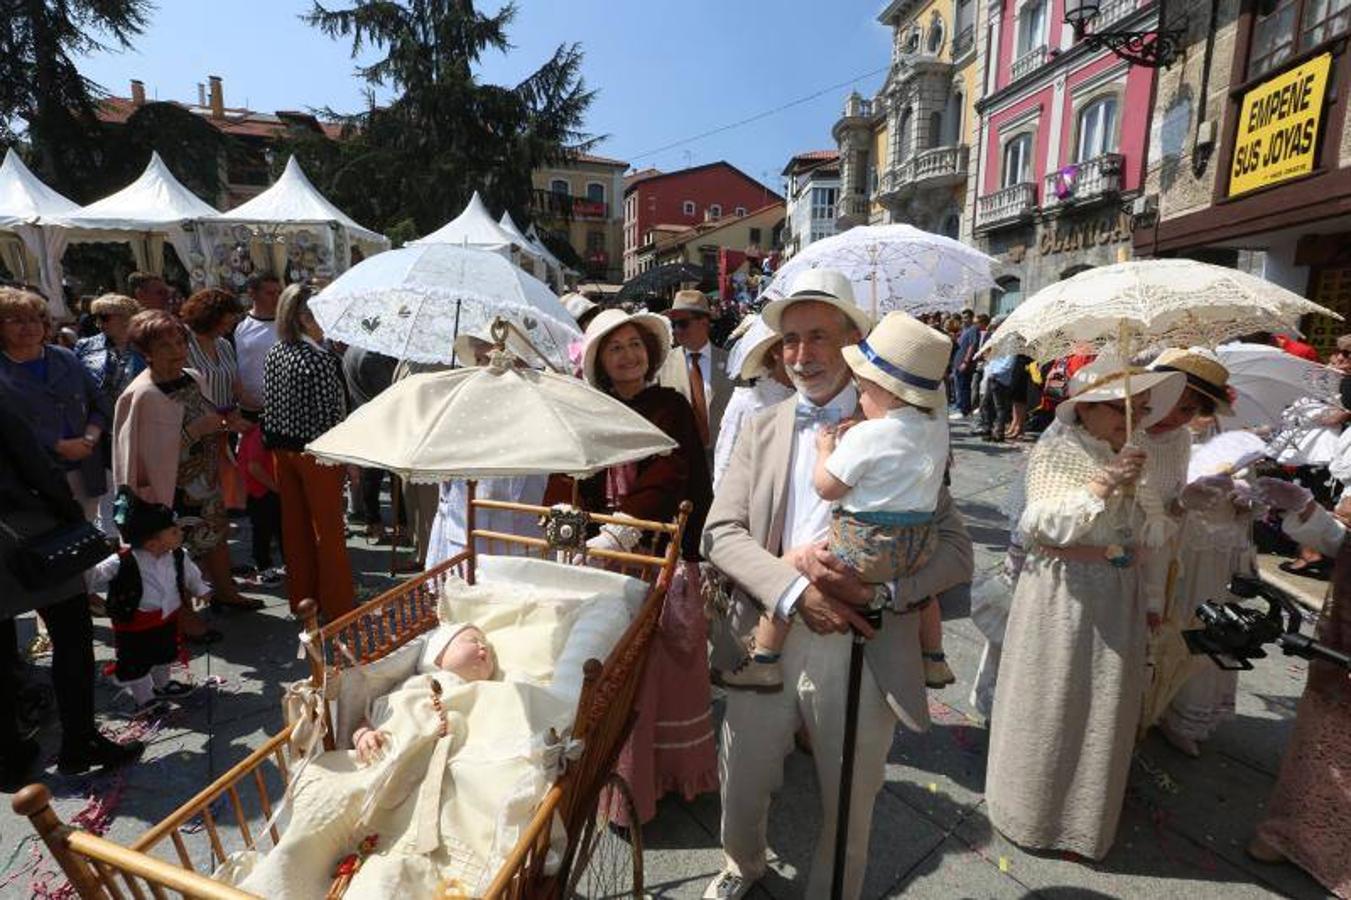 Las fiestas de El Bollo comenzaron este domingo con la lectura del pregón en la plaza de España y el primer desfile de carrozas por las calles del centro de la ciudad, abarrotadas de público en una jornada calurosa